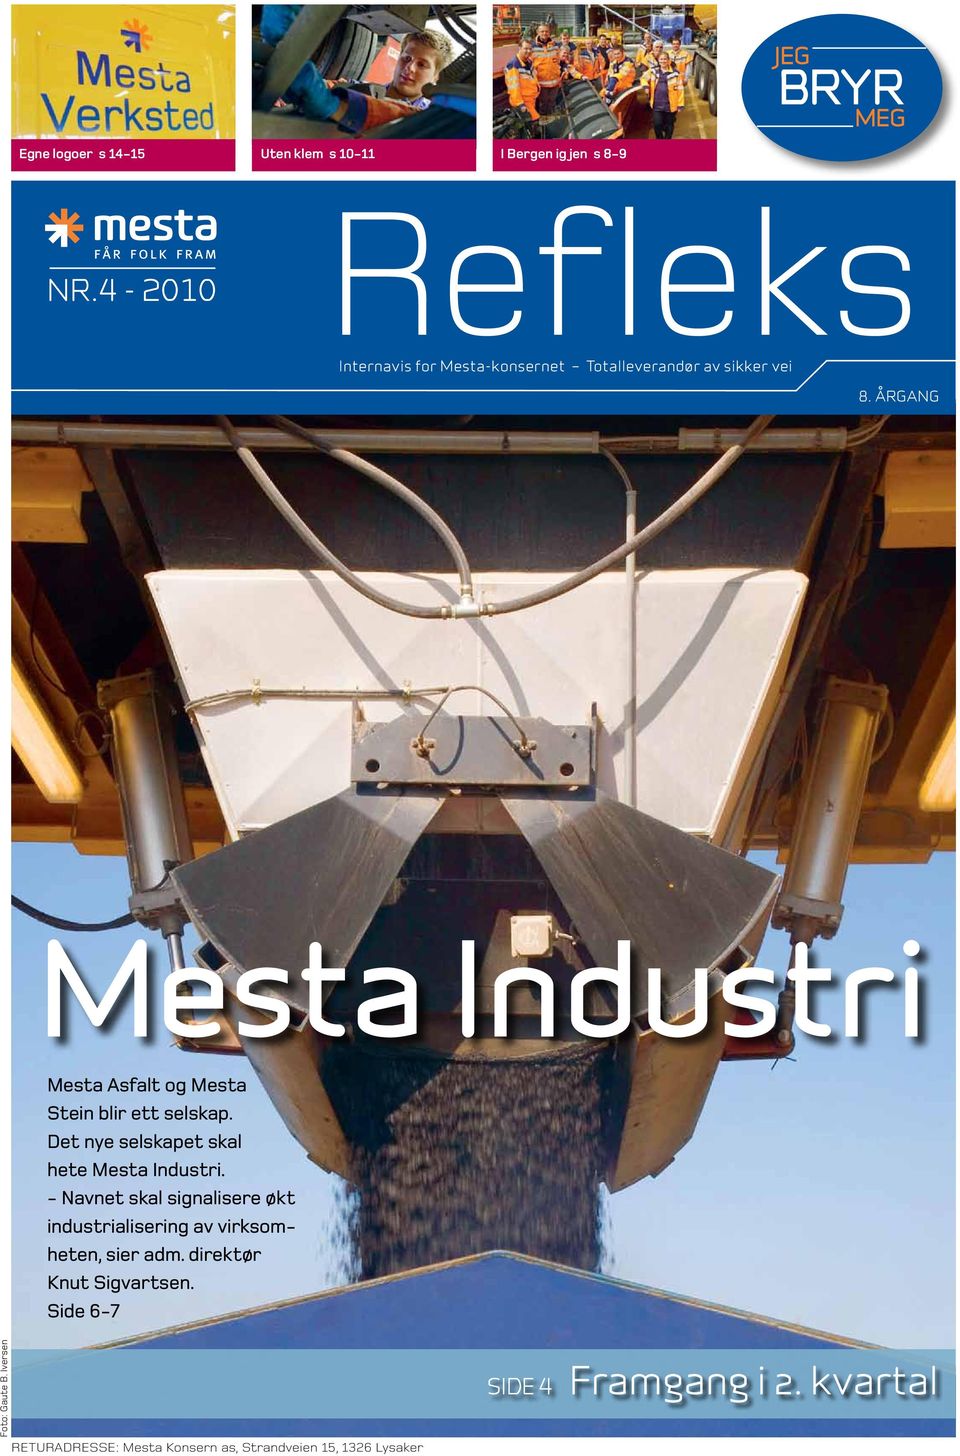 ÅRGANG Mesta Industri Mesta Asfalt og Mesta Stein blir ett selskap. Det nye selskapet skal hete Mesta Industri.